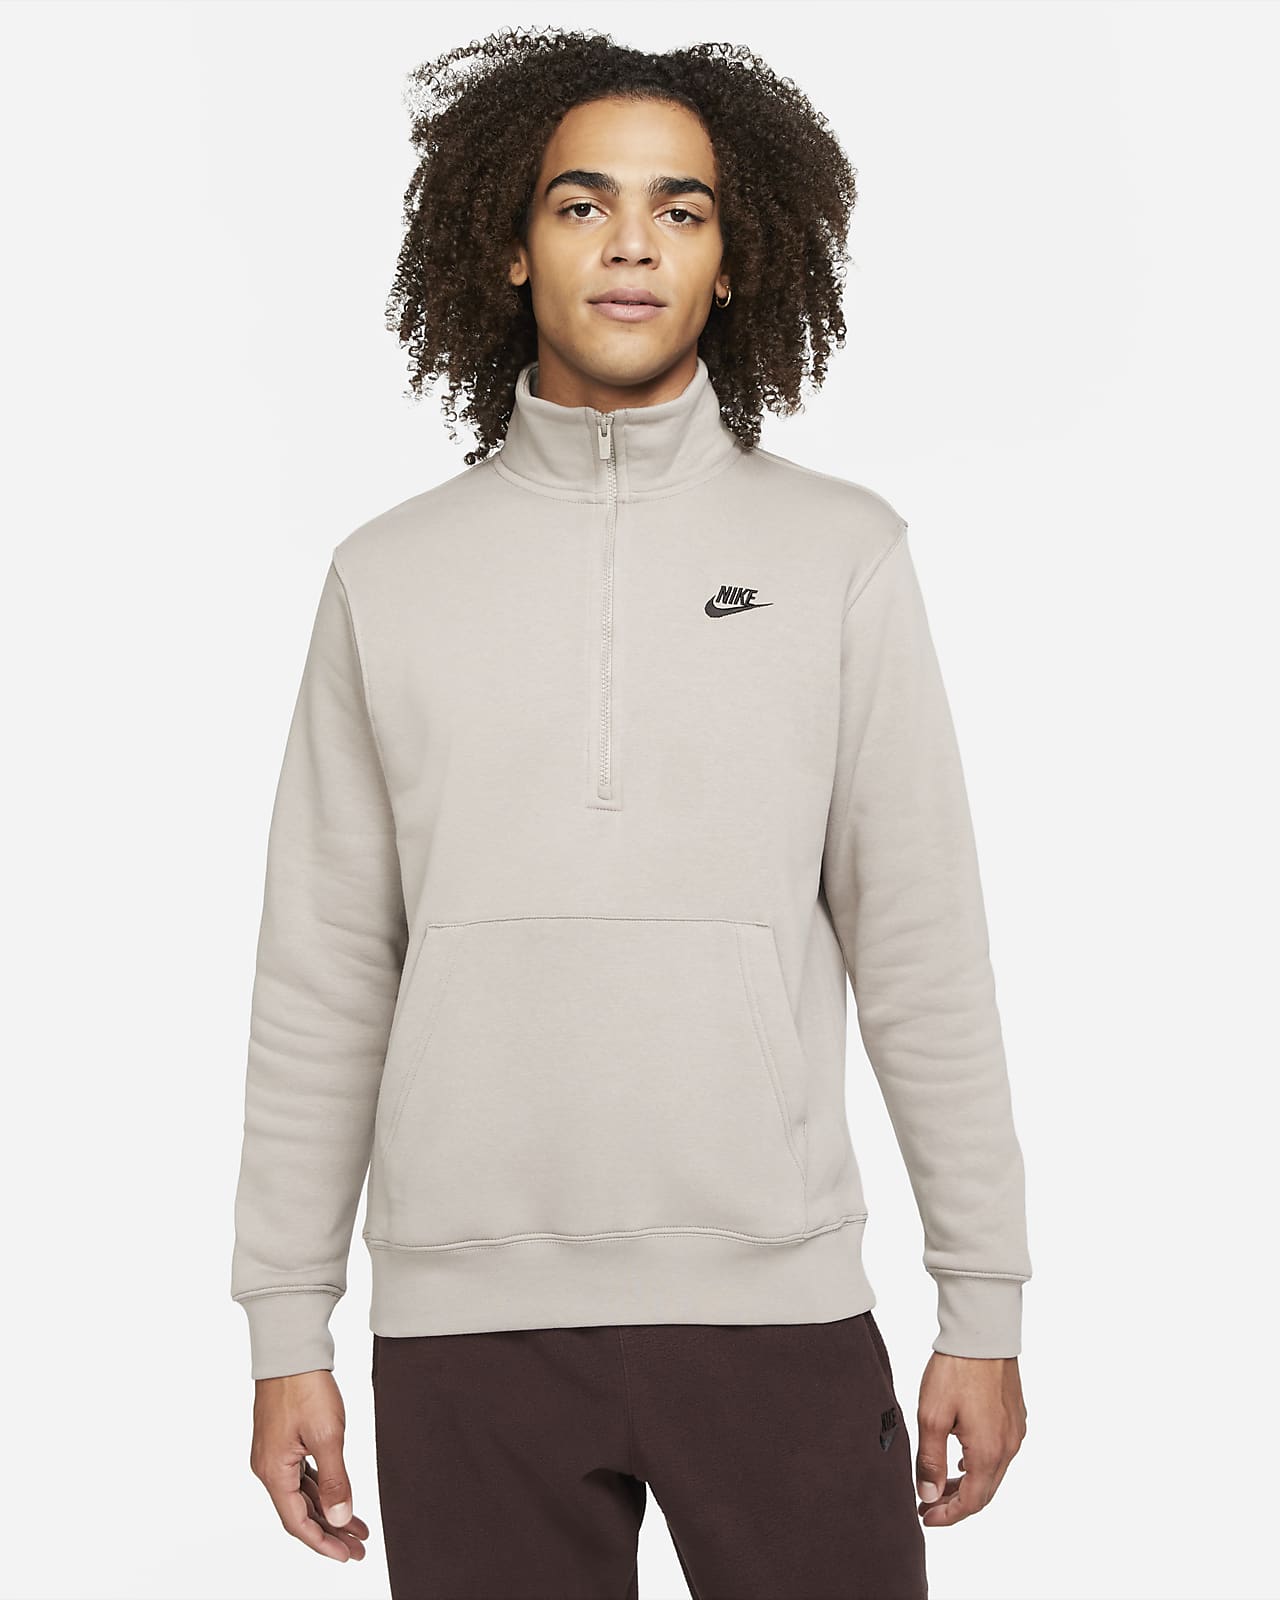 Ανδρική φλις μπλούζα με φερμουάρ στο μισό μήκος Nike Sportswear